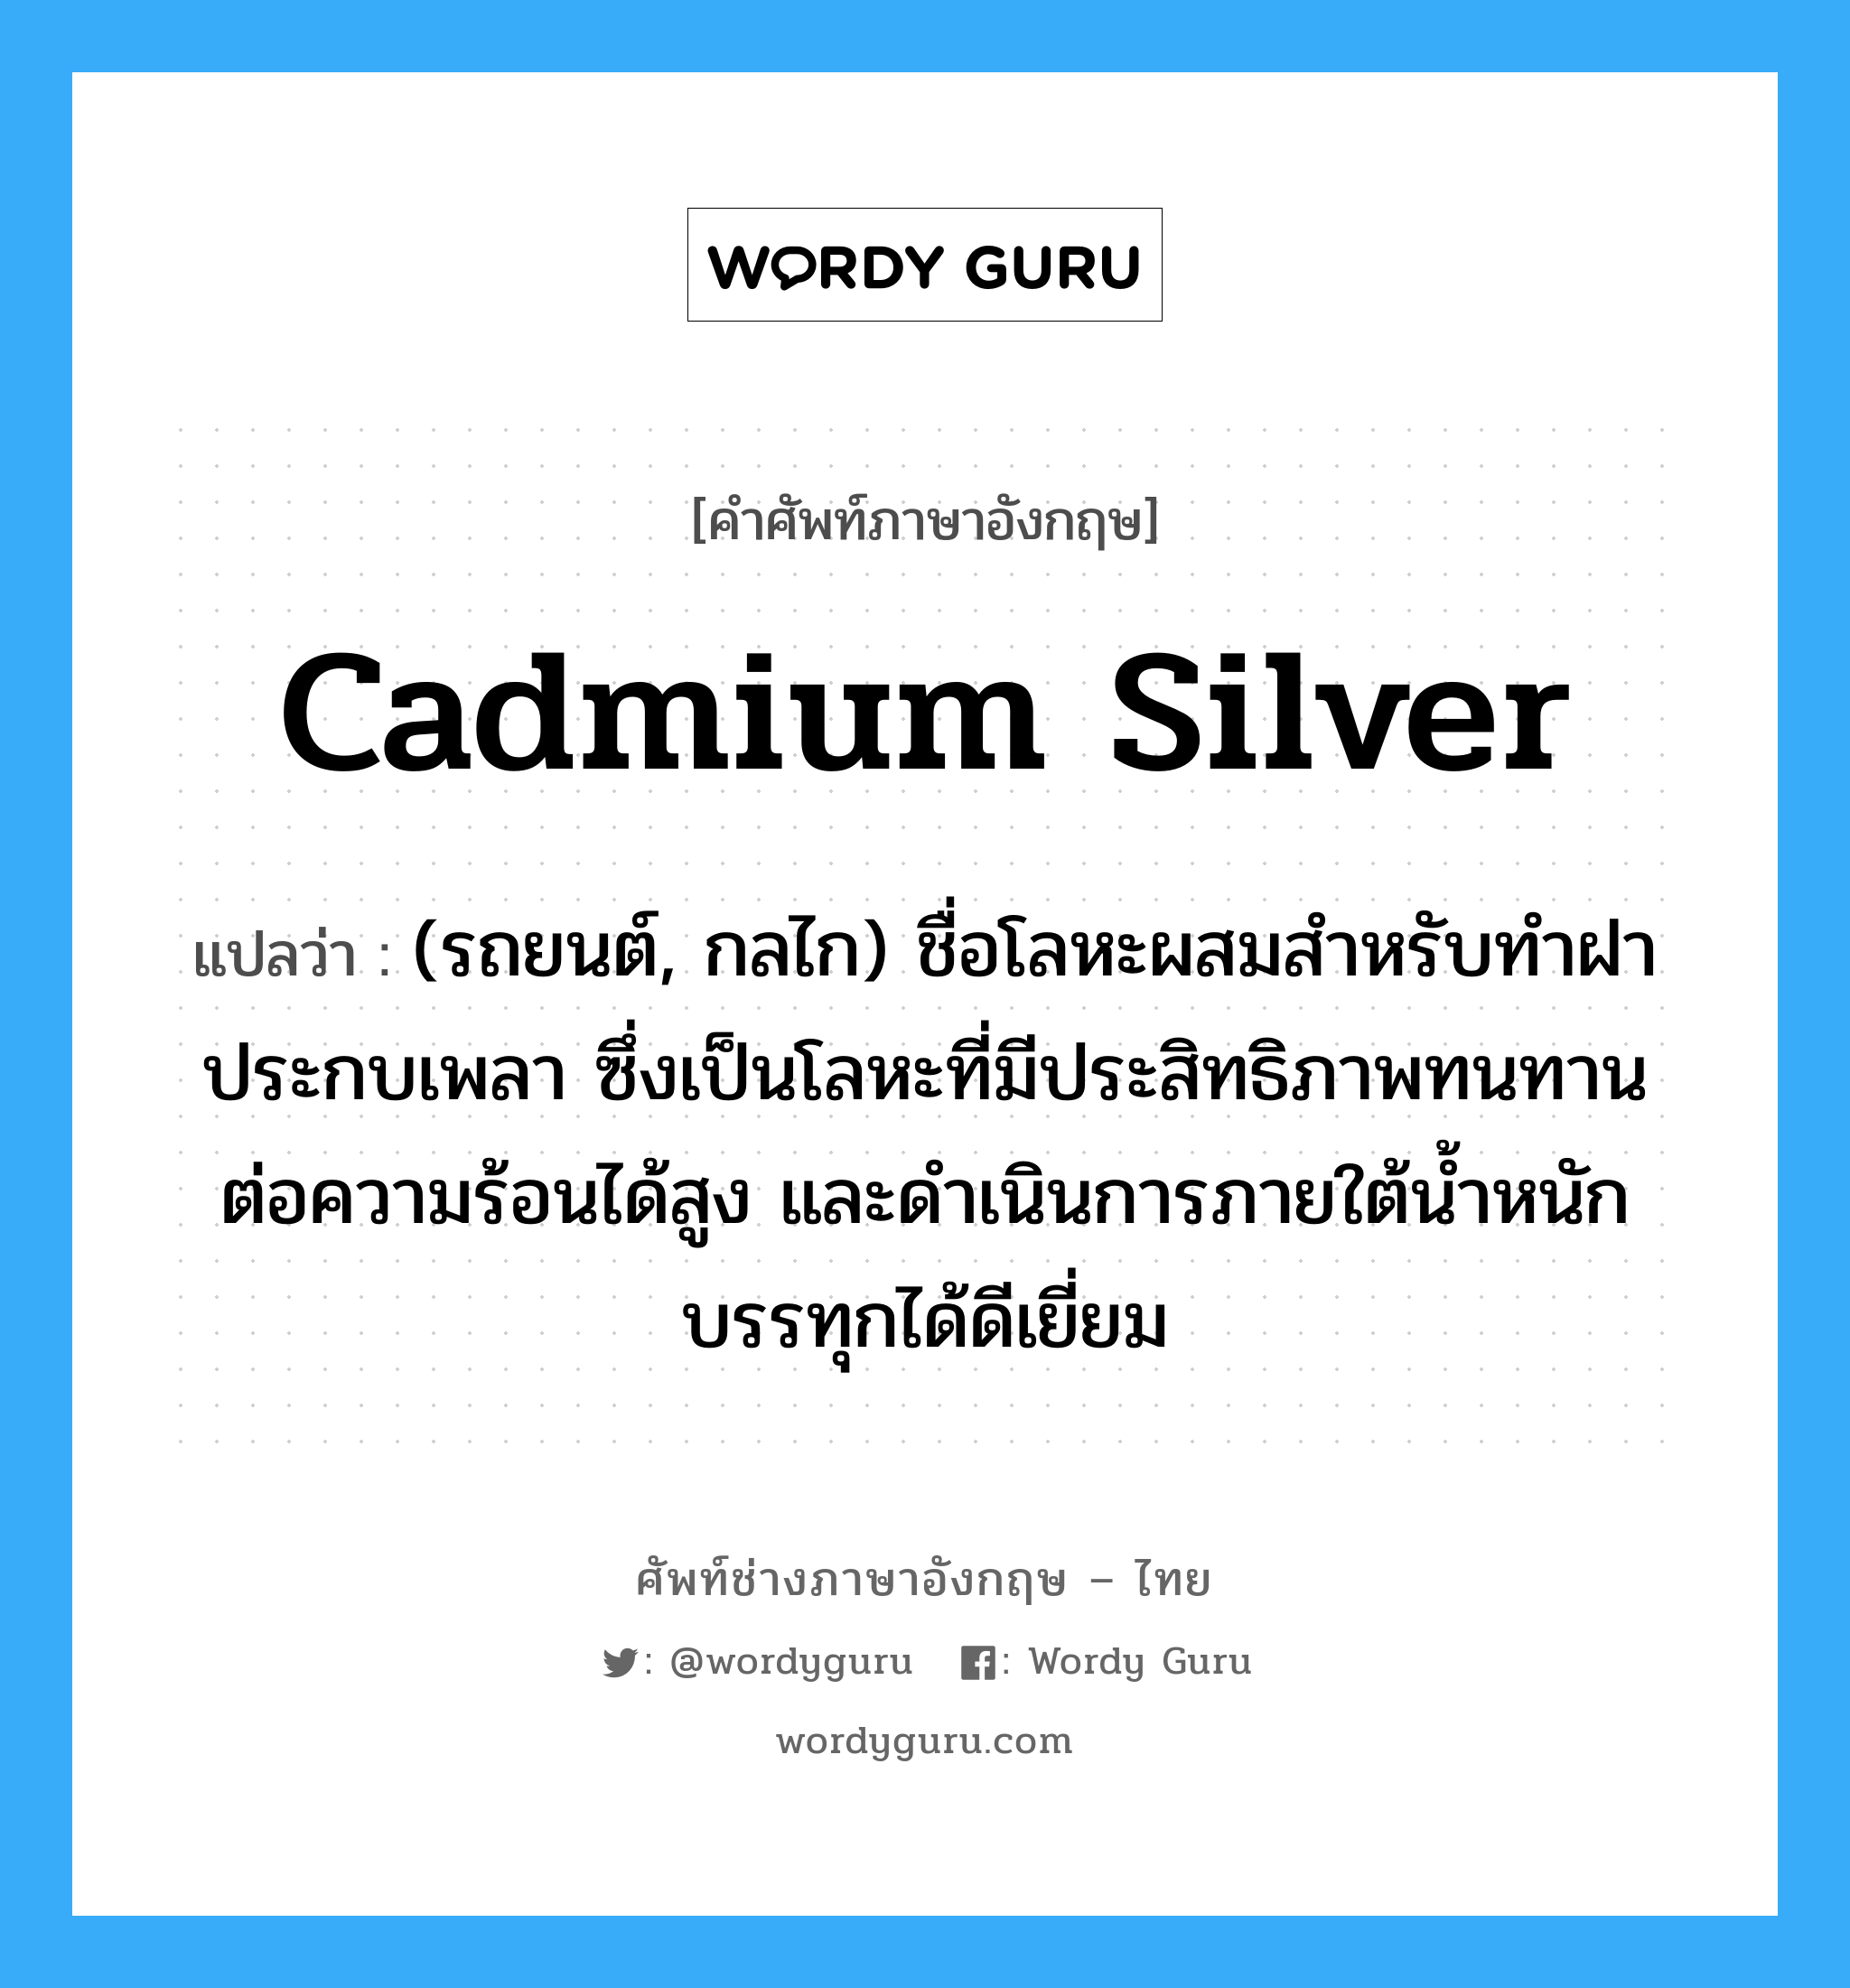 cadmium silver แปลว่า?, คำศัพท์ช่างภาษาอังกฤษ - ไทย cadmium silver คำศัพท์ภาษาอังกฤษ cadmium silver แปลว่า (รถยนต์, กลไก) ชื่อโลหะผสมสำหรับทำฝาประกบเพลา ซึ่งเป็นโลหะที่มีประสิทธิภาพทนทานต่อความร้อนได้สูง และดำเนินการภายใต้น้ำหนักบรรทุกได้ดีเยี่ยม